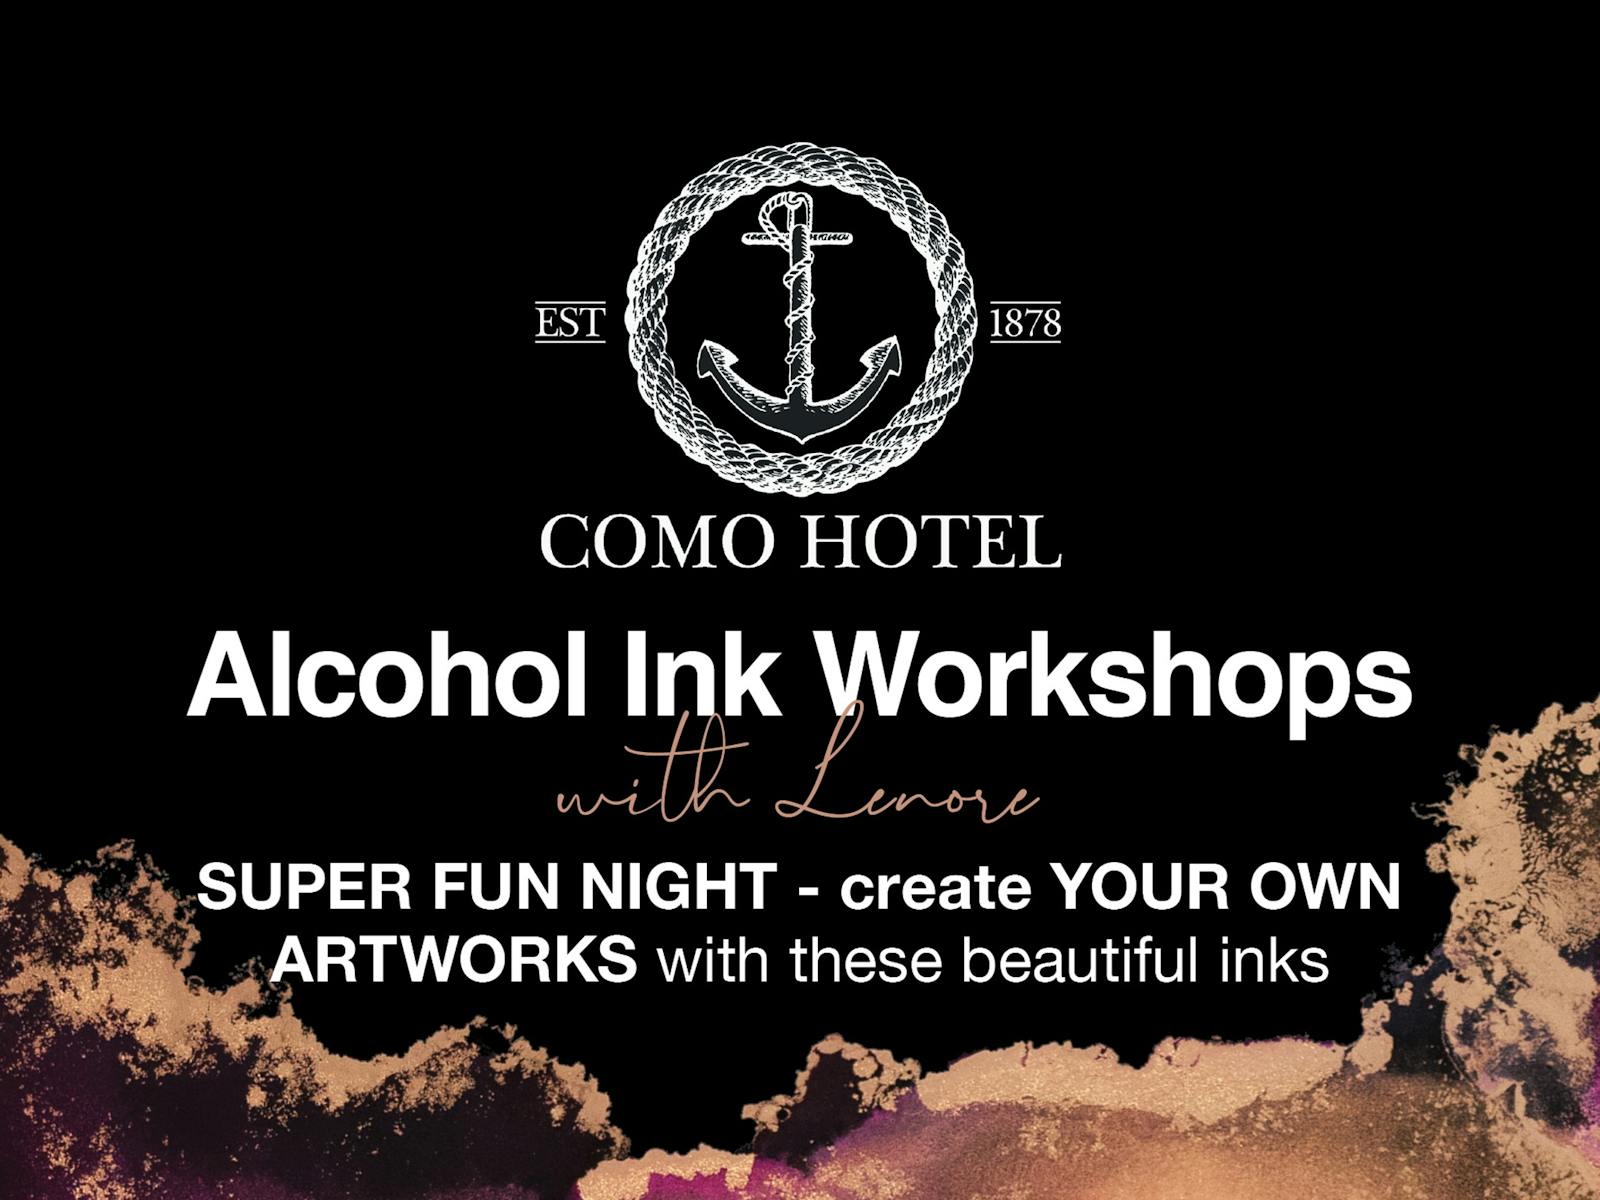 Image for Alcohol Ink Workshop at Como Hotel